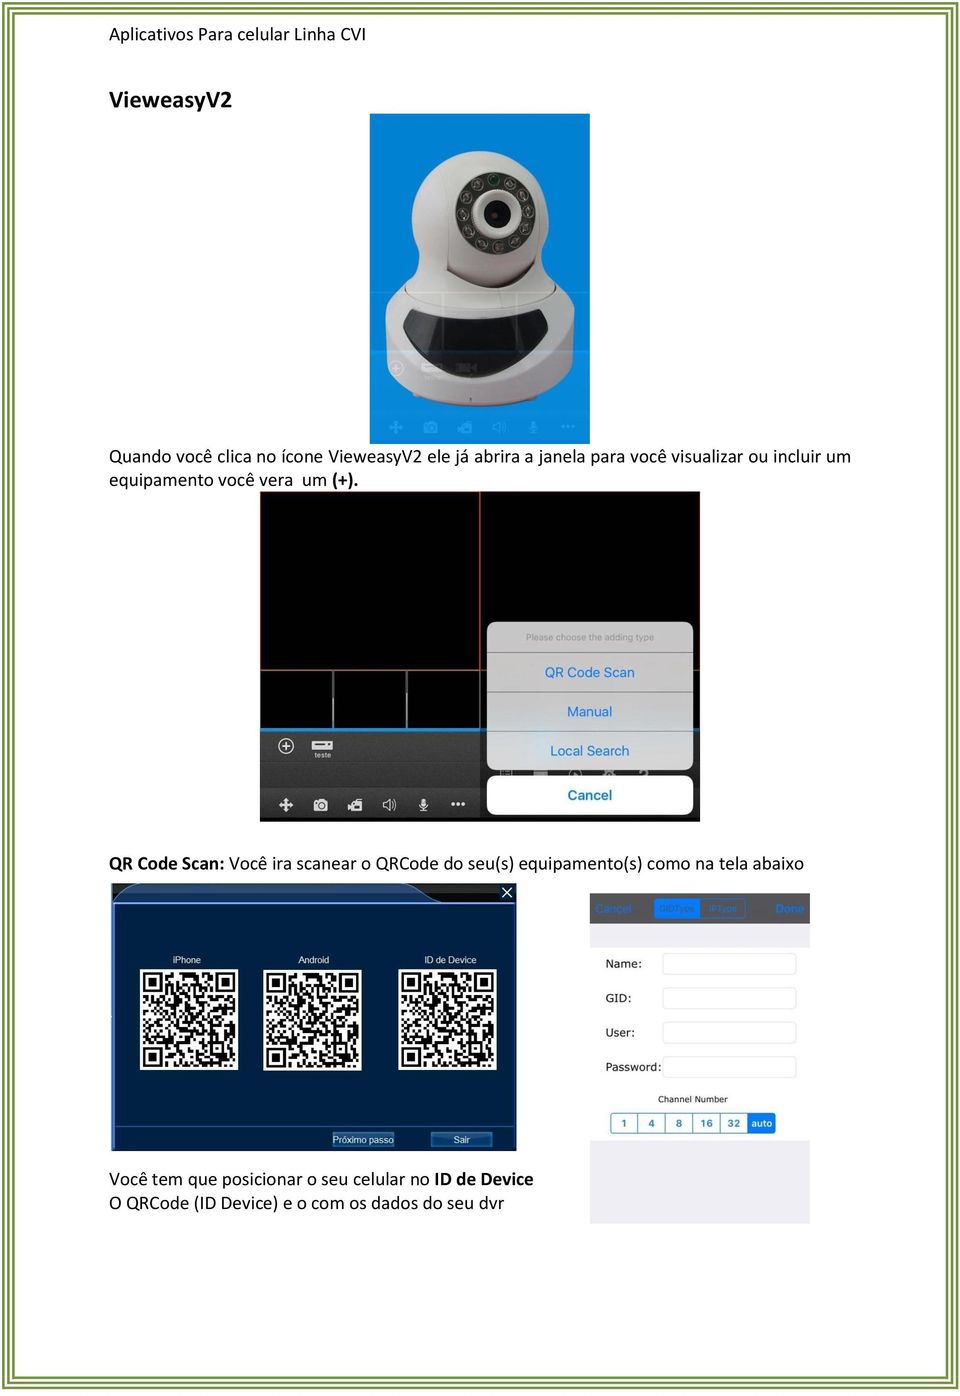 QR Code Scan: Você ira scanear o QRCode do seu(s) equipamento(s) como na tela